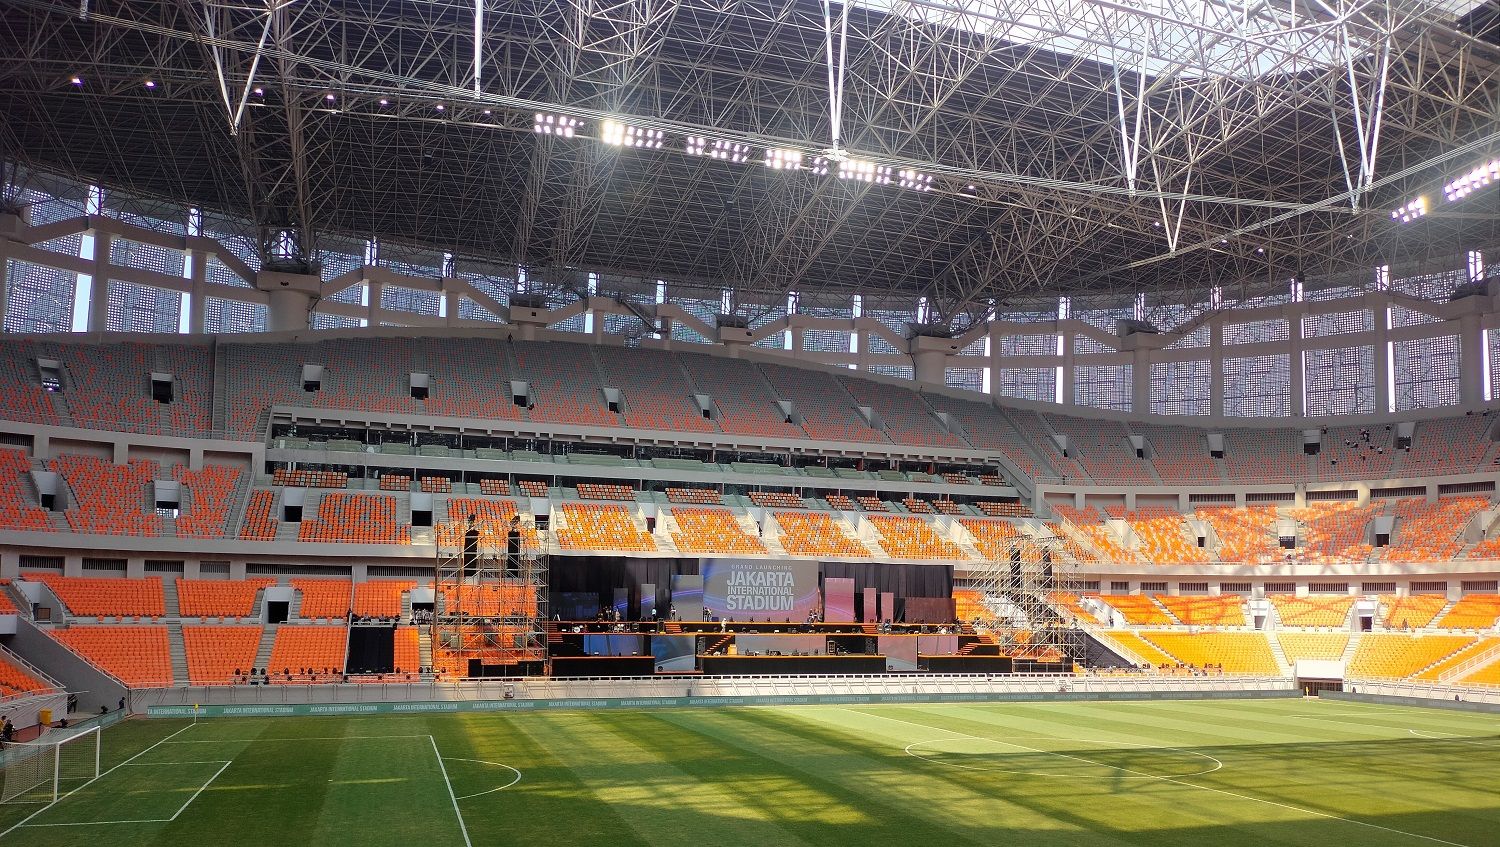 Lapangan di Jakarta International Stadium (JIS) berukuran 105 x 68 meter dengan permukaan lapangan menggunakan rumput hibrida. Copyright: © Ammara Marthiara/INDOSPORT